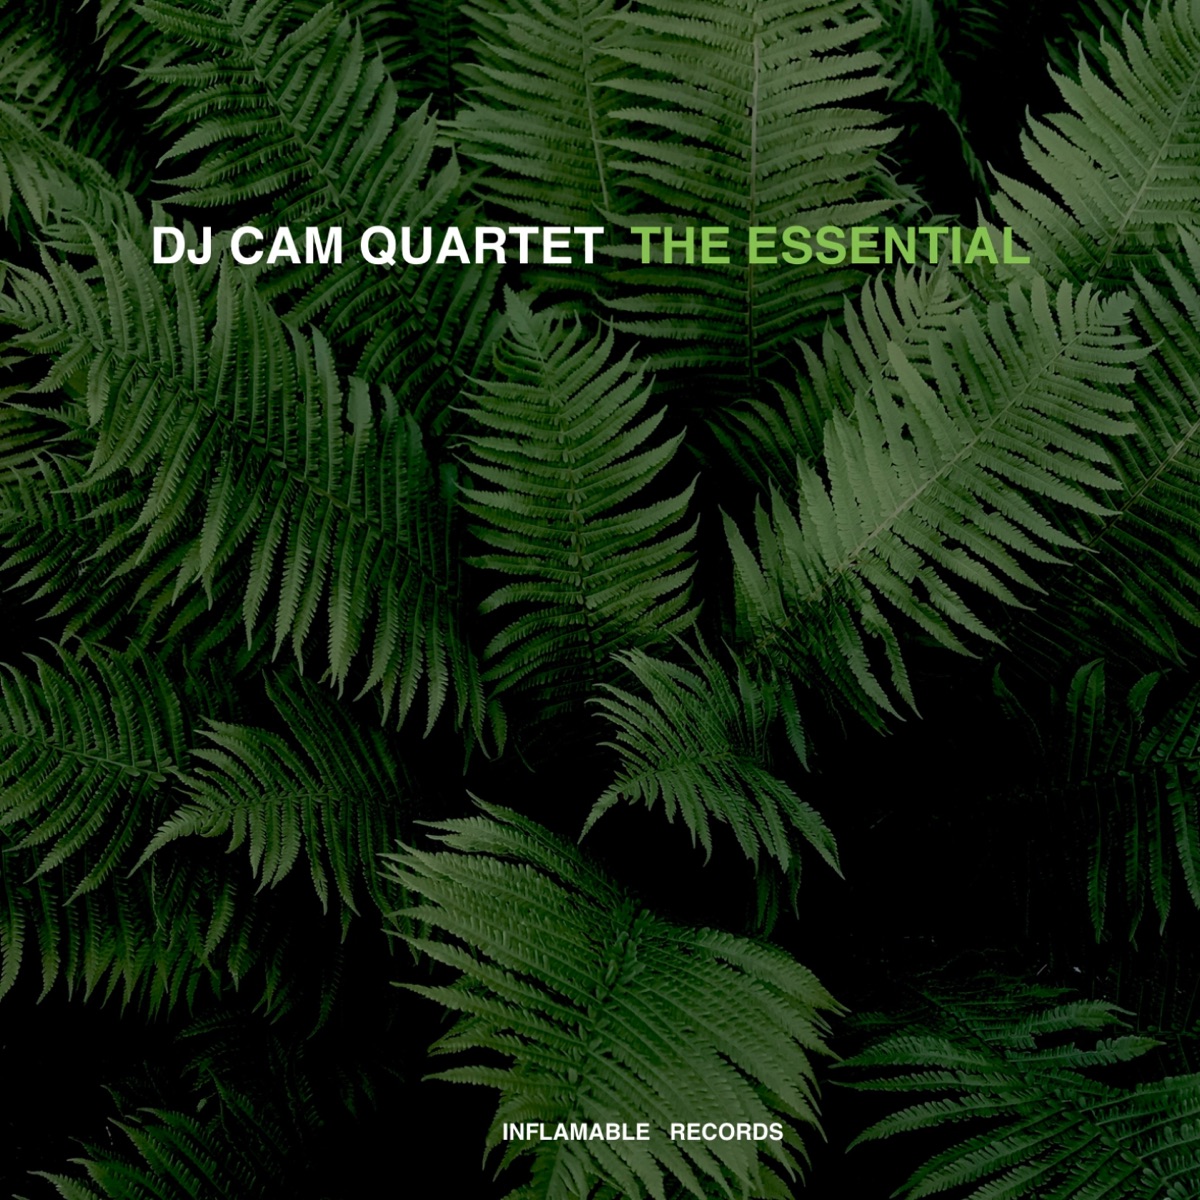 Rebirth of Cool - Album by DJ Cam Quartet - Apple Music